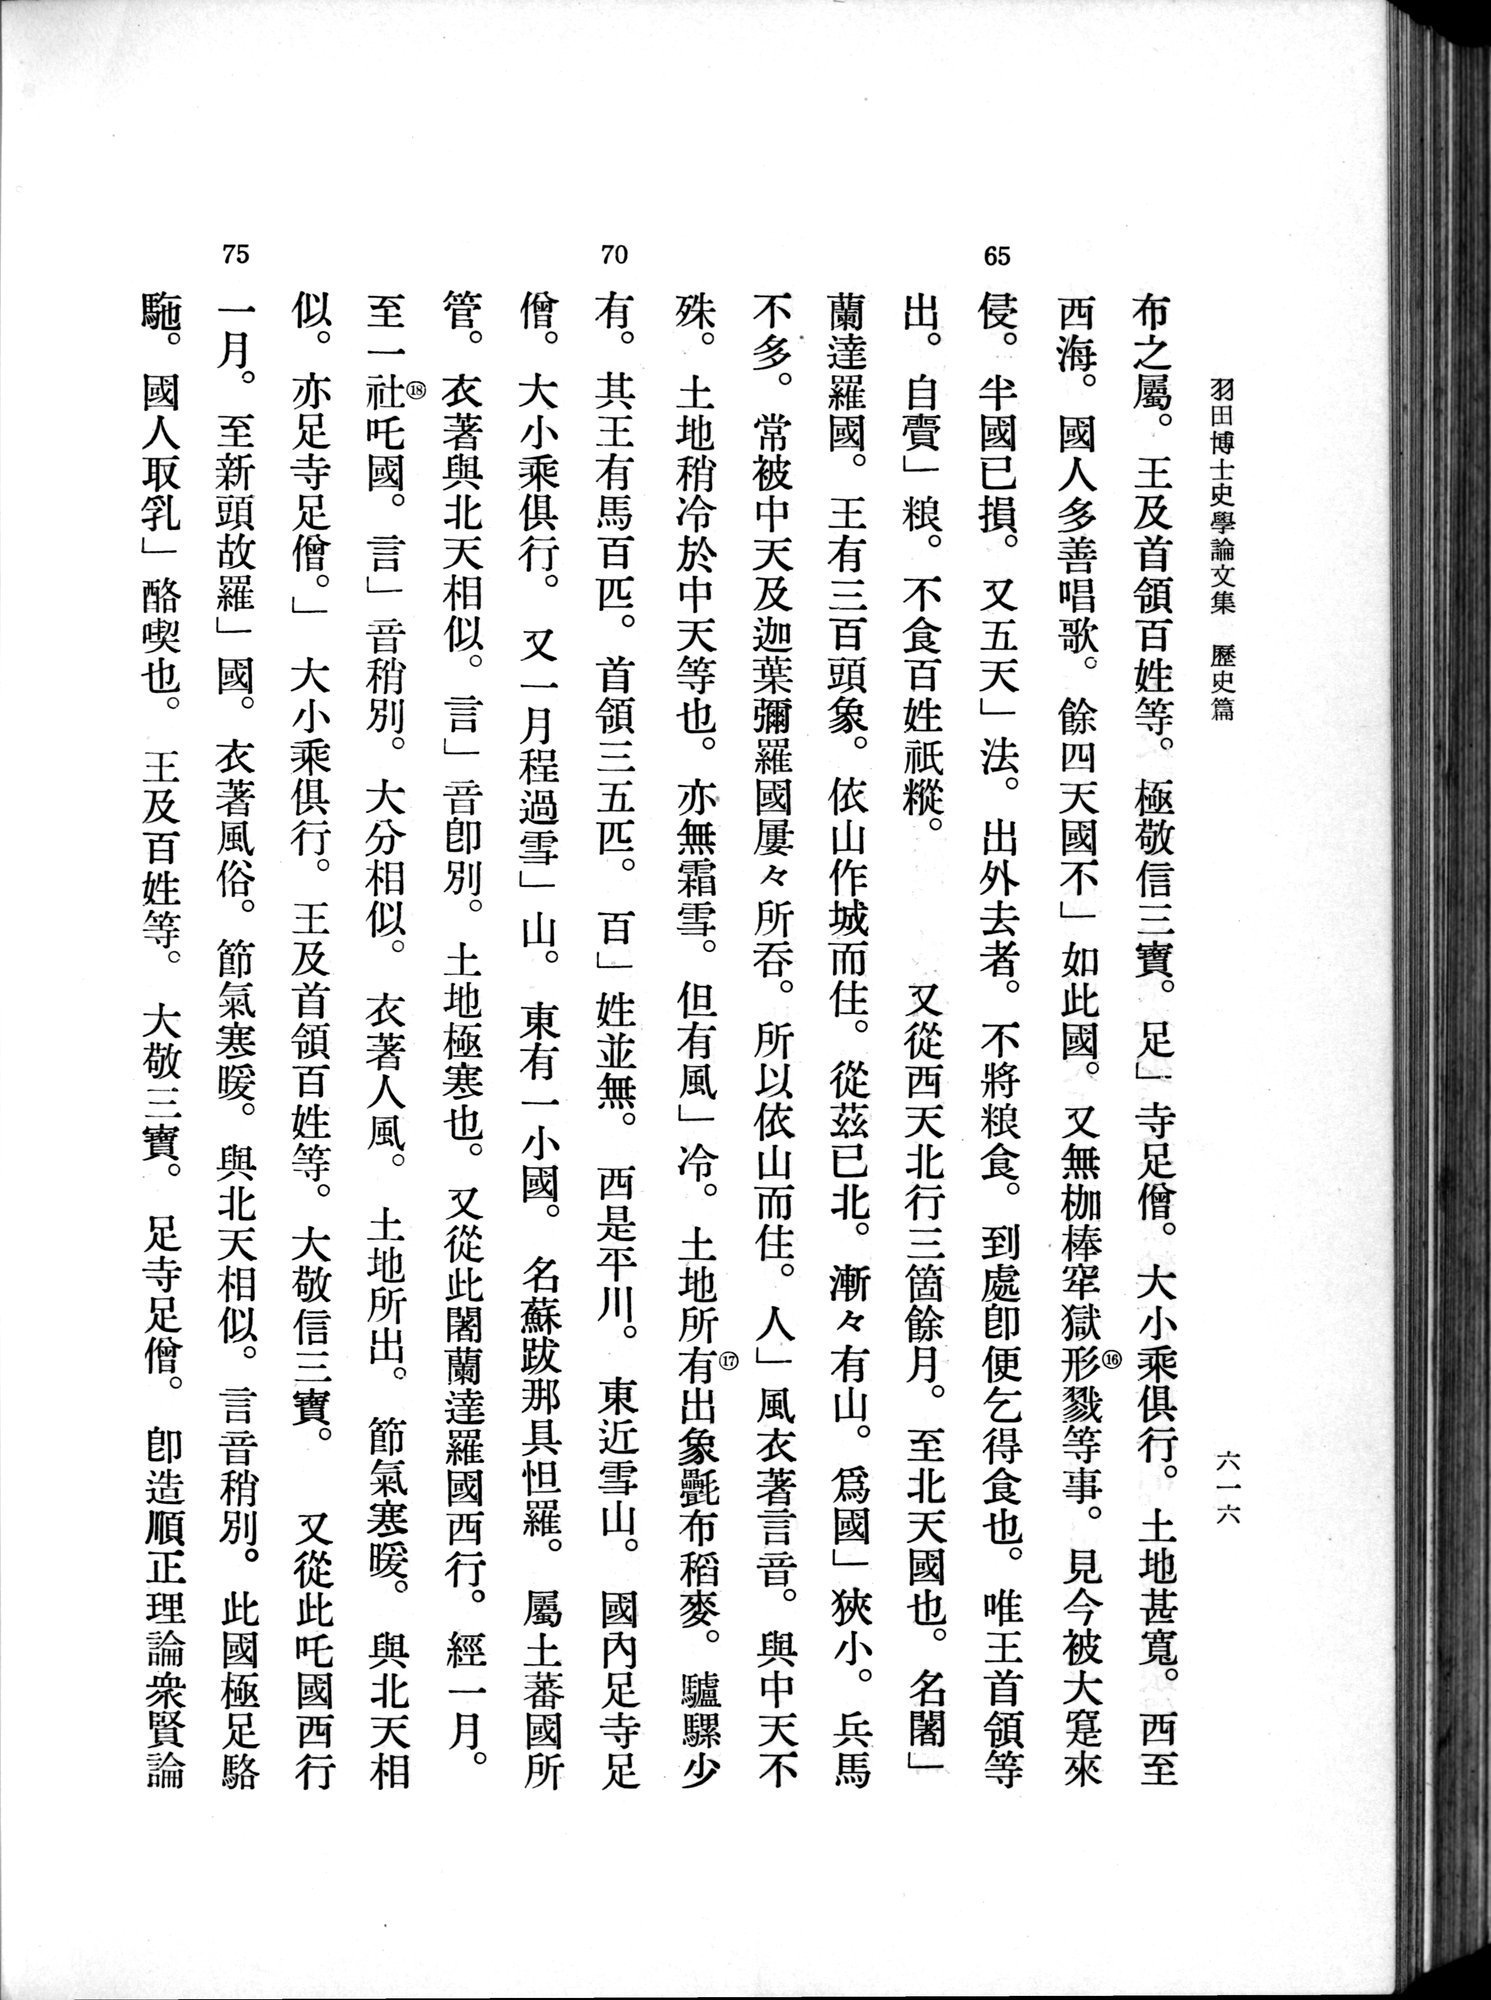 羽田博士史学論文集 : vol.1 / 654 ページ（白黒高解像度画像）